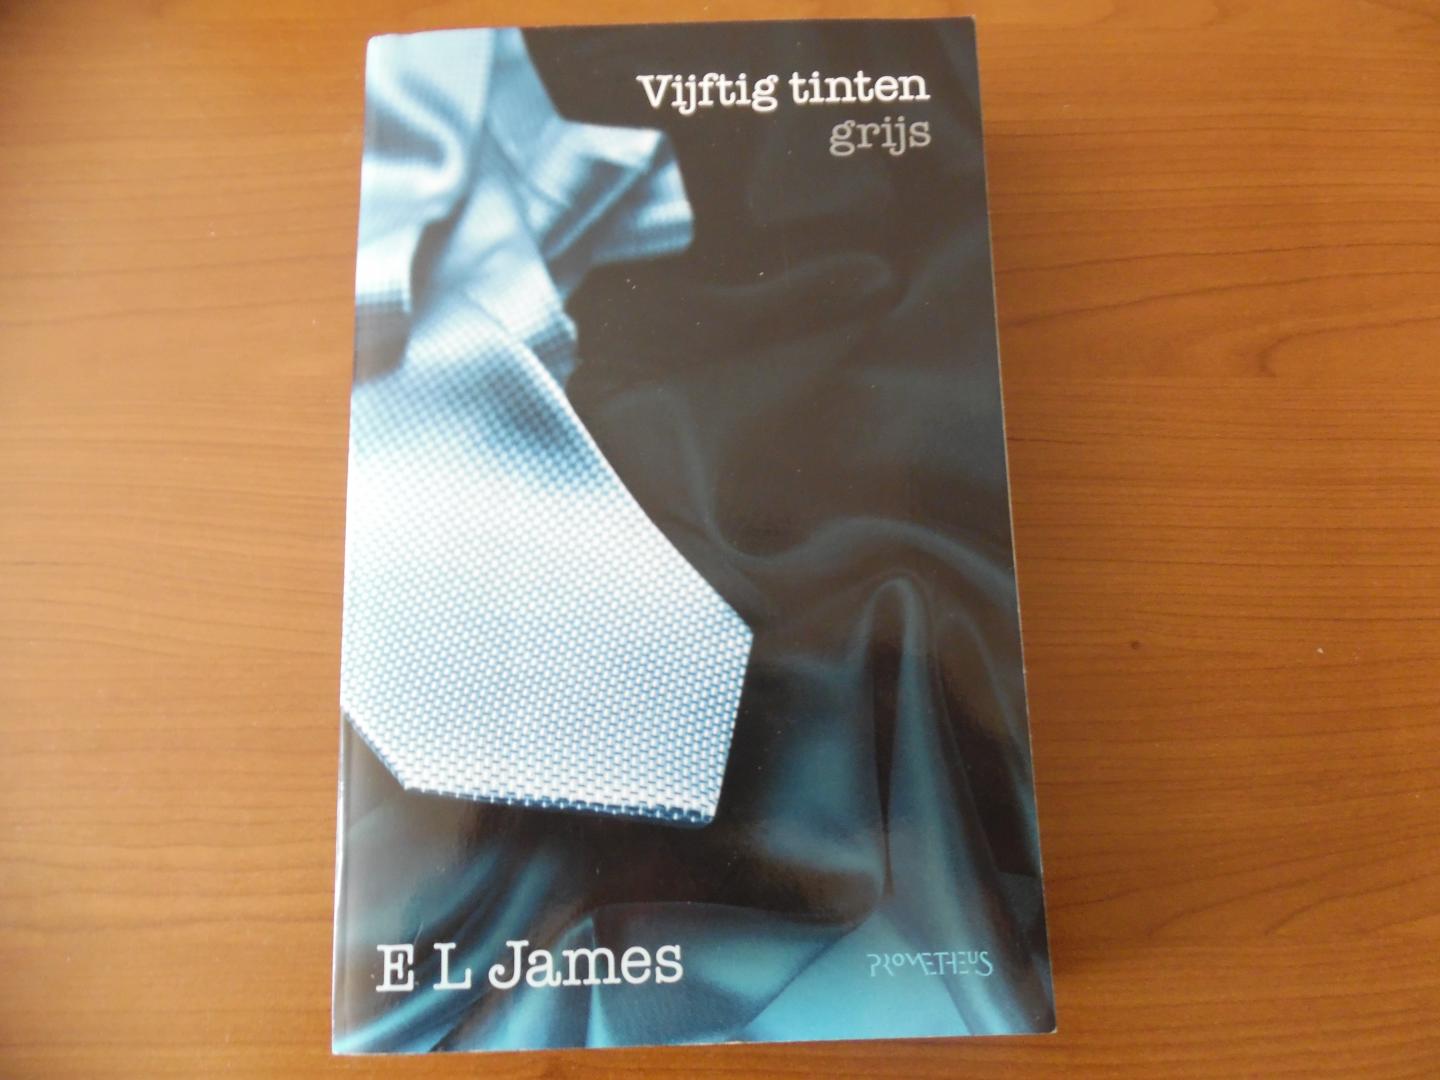 James, E.L. - Vijftig tinten grijs